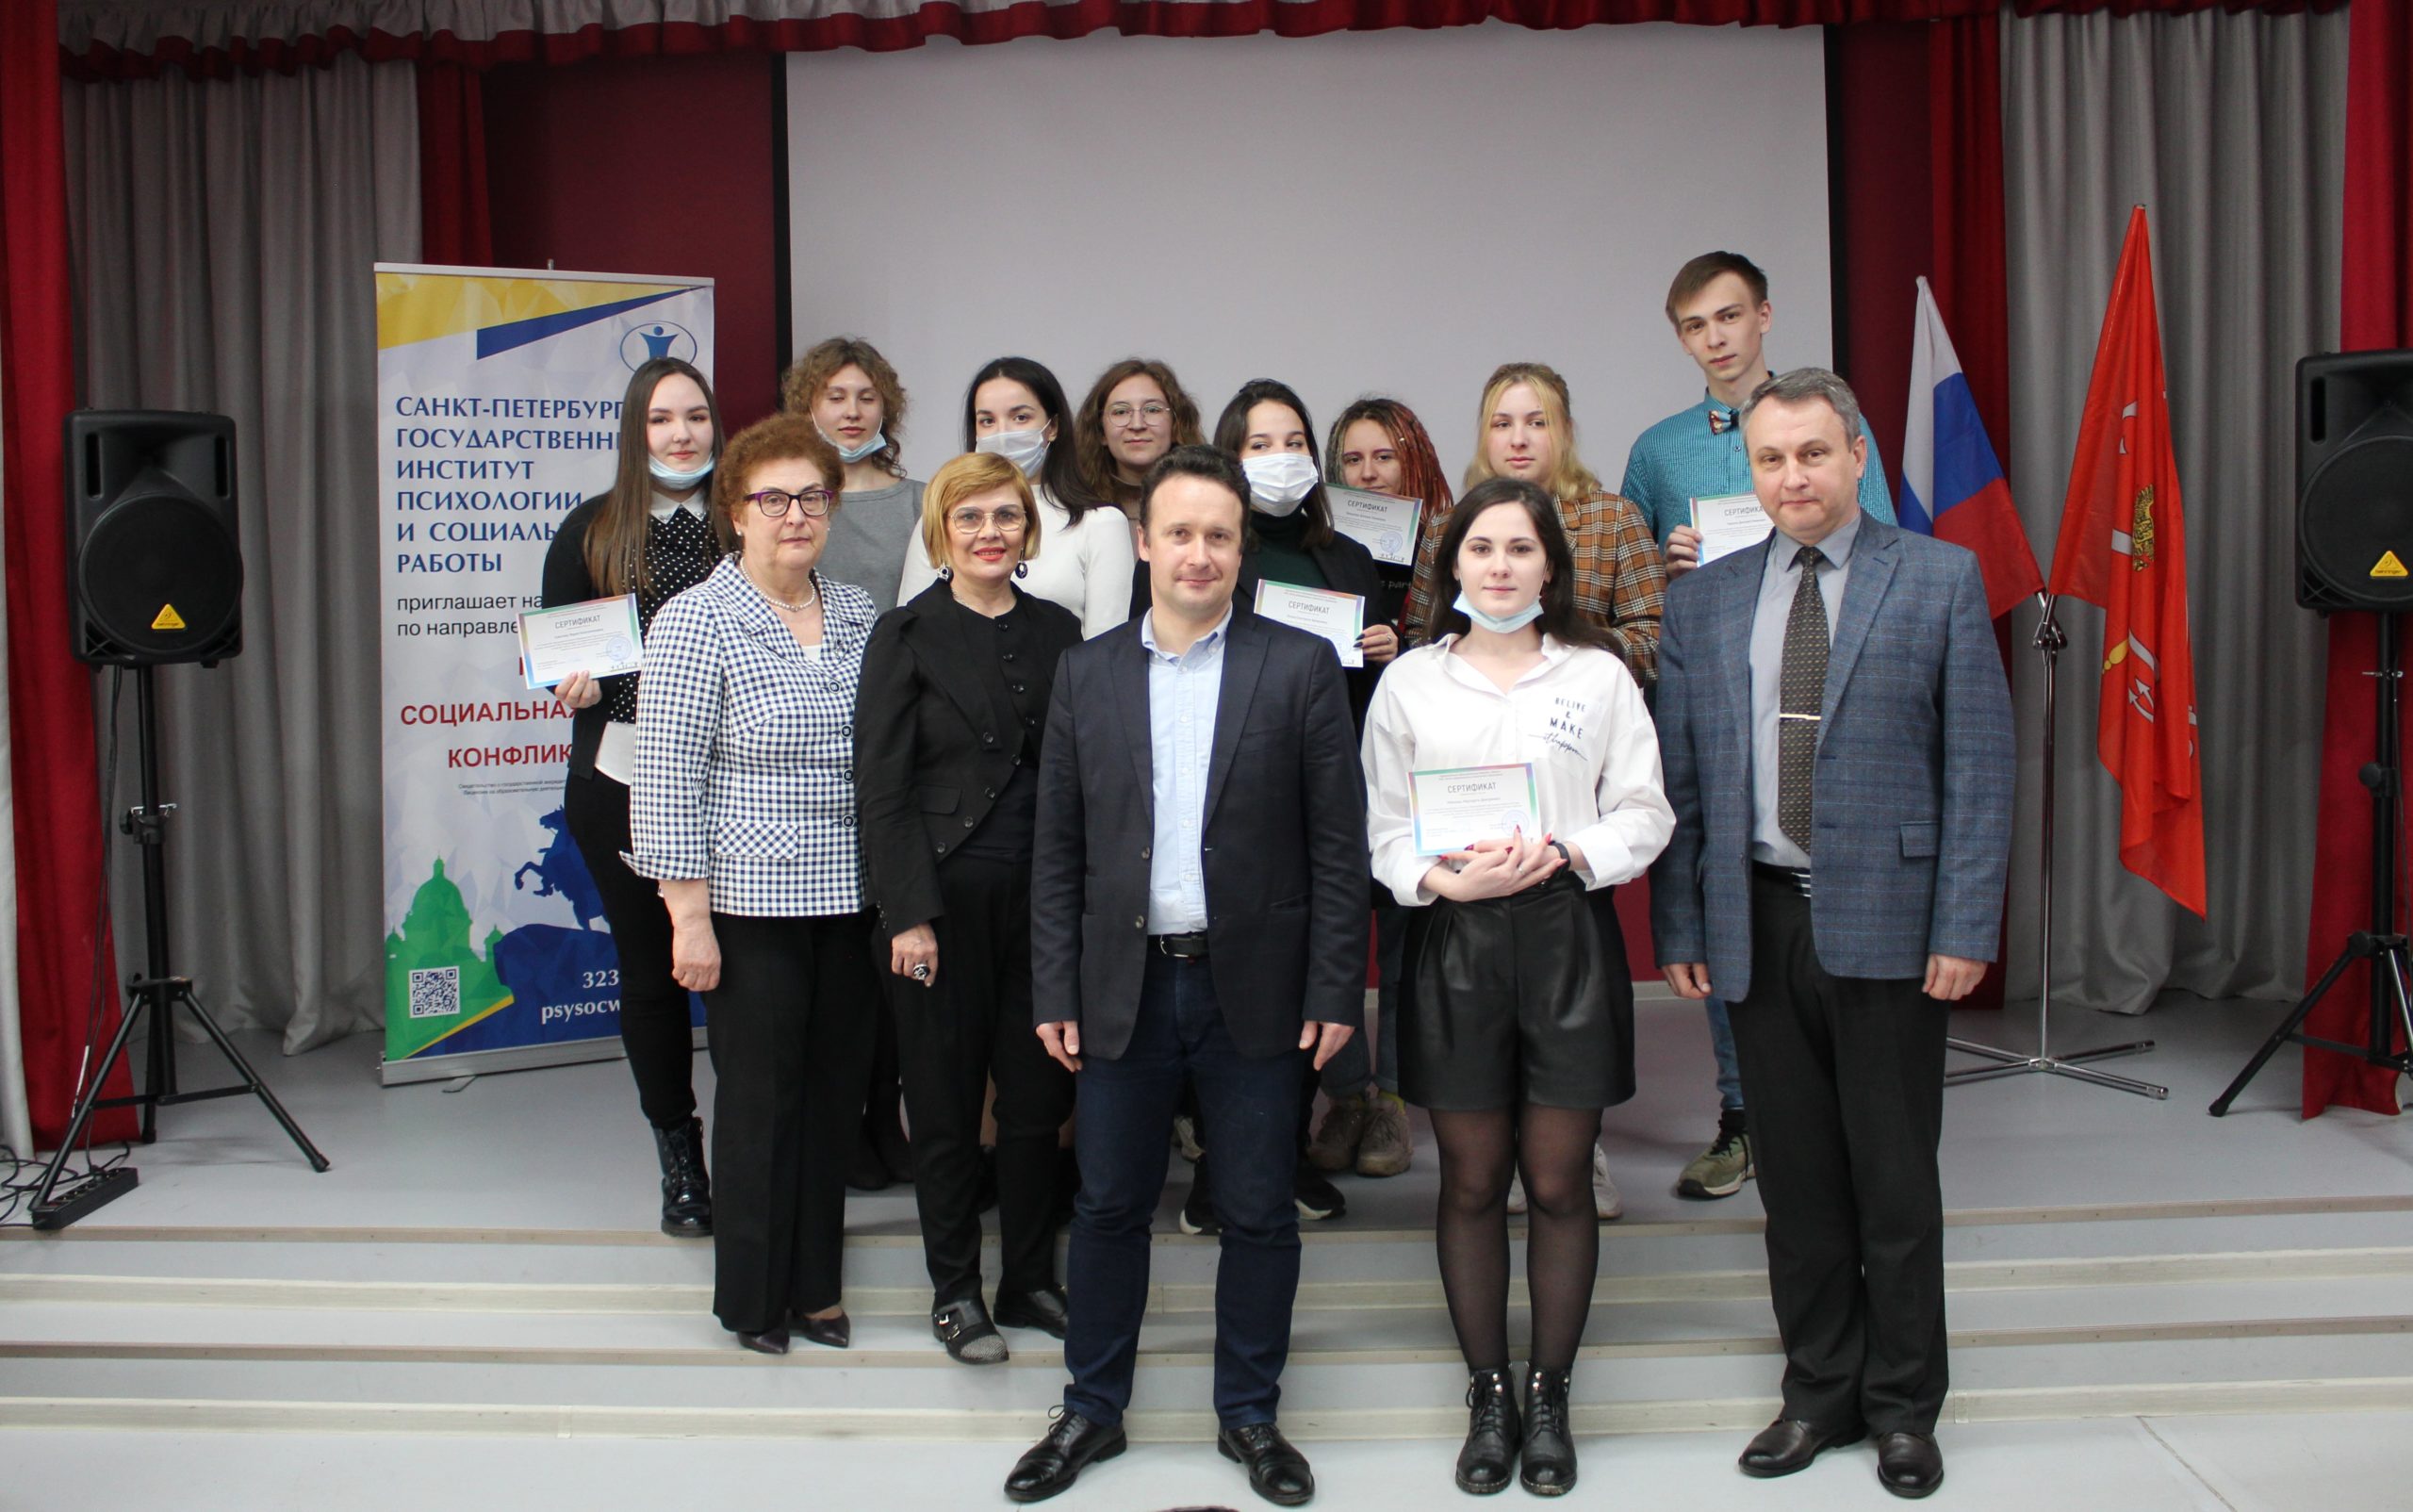 В Институте состоялось торжественное вручение сертификатов участникам образовательного семинара в Казани, проходившего с 13 по 15 апреля